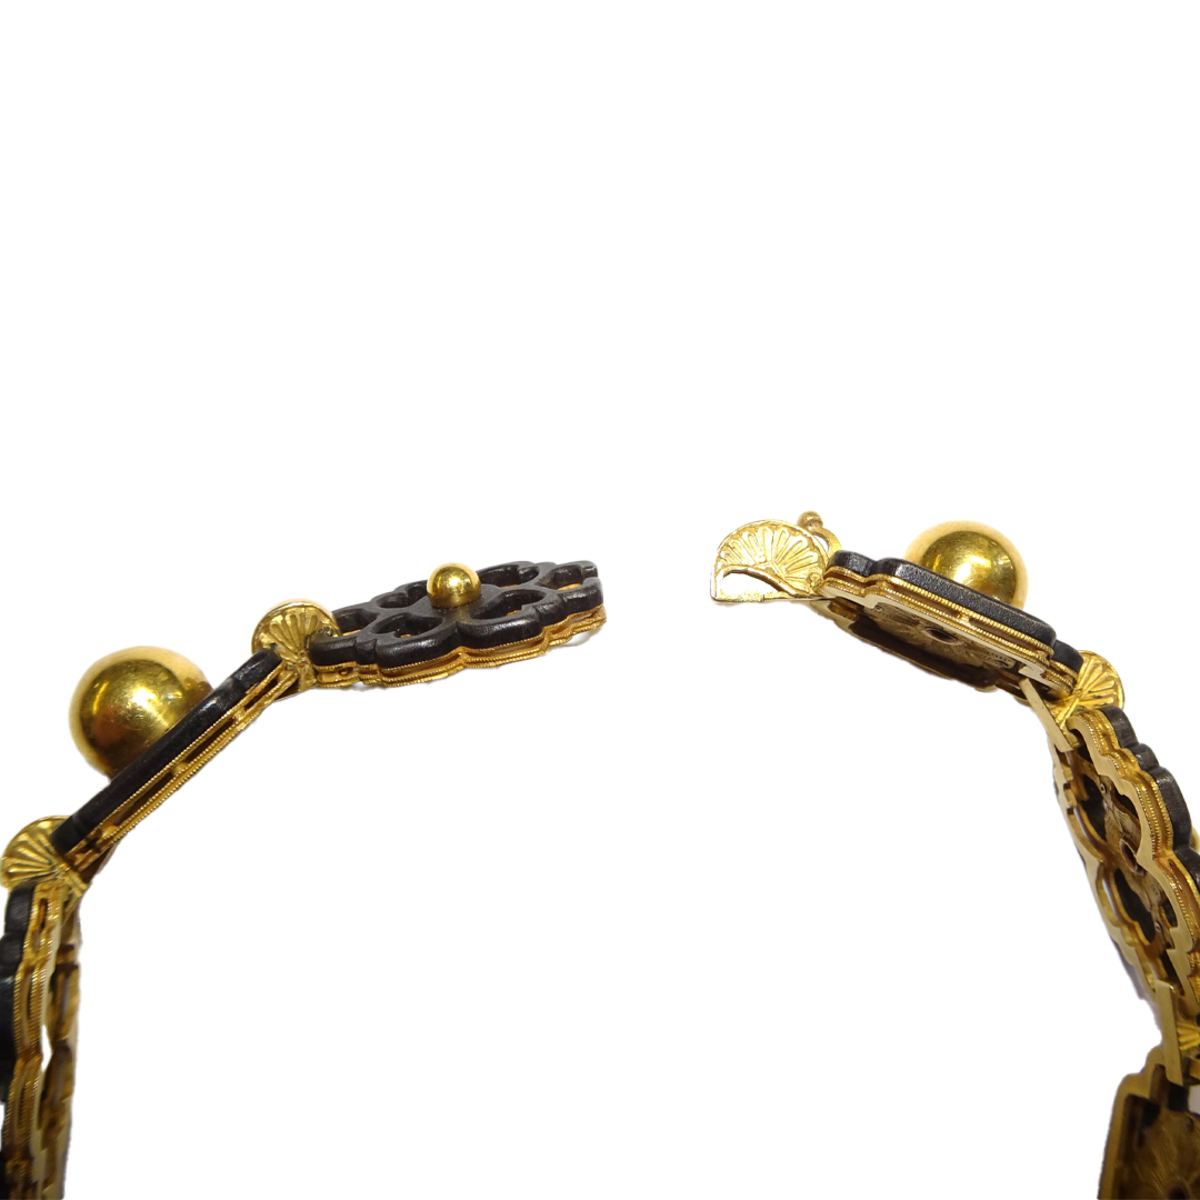 Marsh's Art Nouveau 14KT Yellow Gold Suite close-up of bracelet clasp